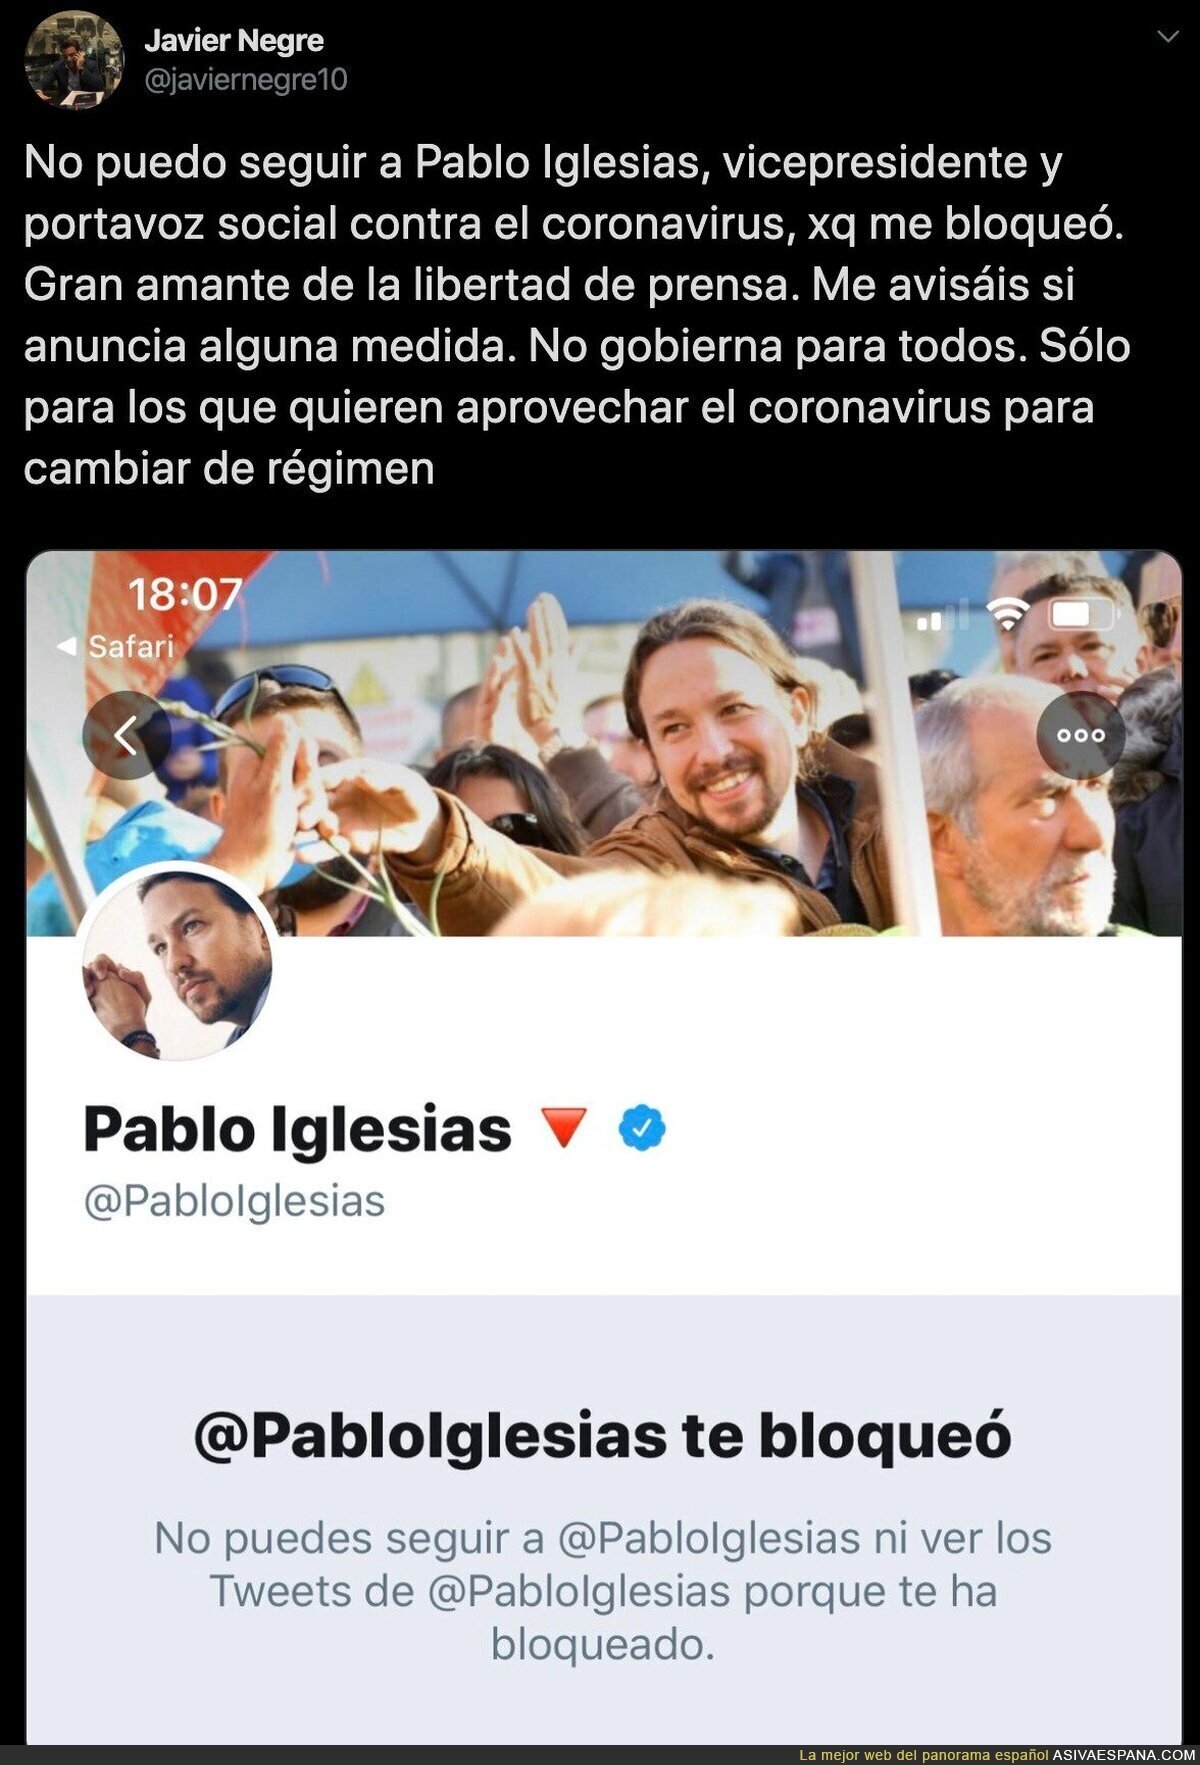 Pablo Iglesias bloquea a Javier Negre por ser un manipulador y se hace el sorprendido